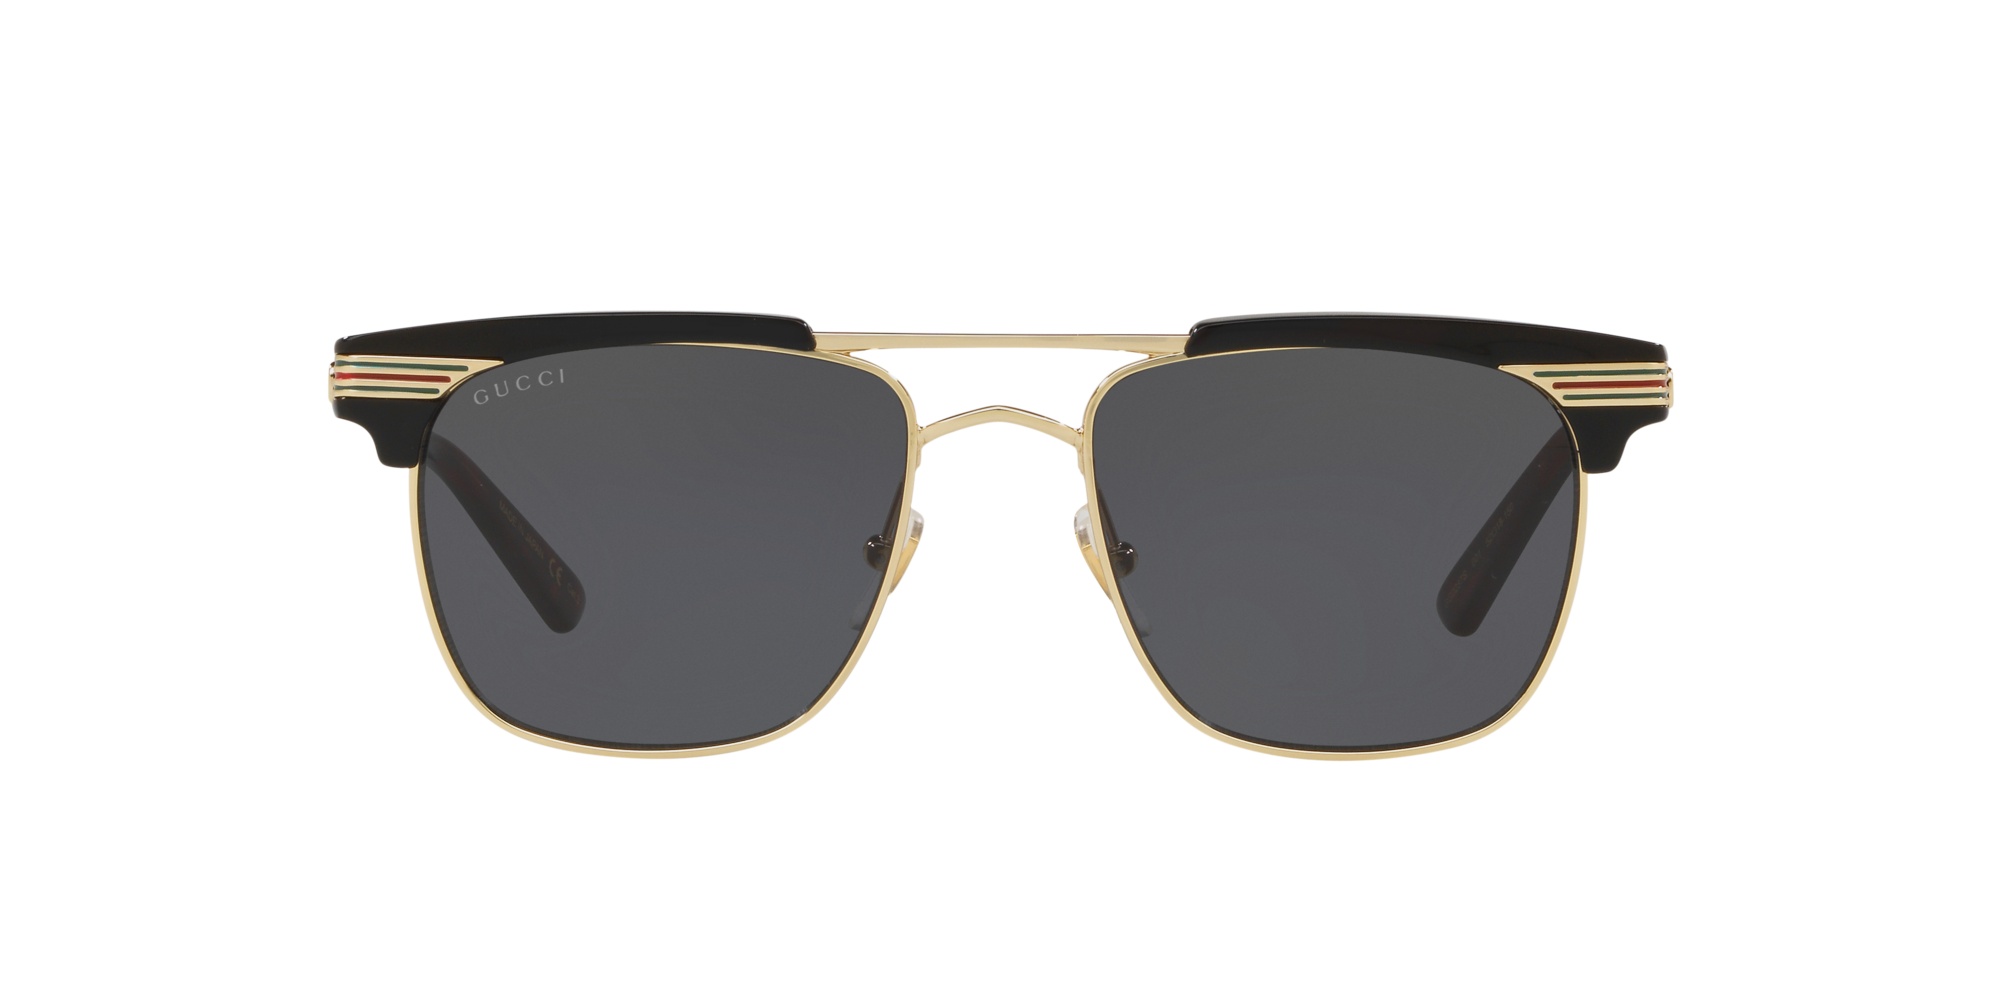 Gucci GG0287S 001 Black-Gold/Grey Square Sunglasses in Black